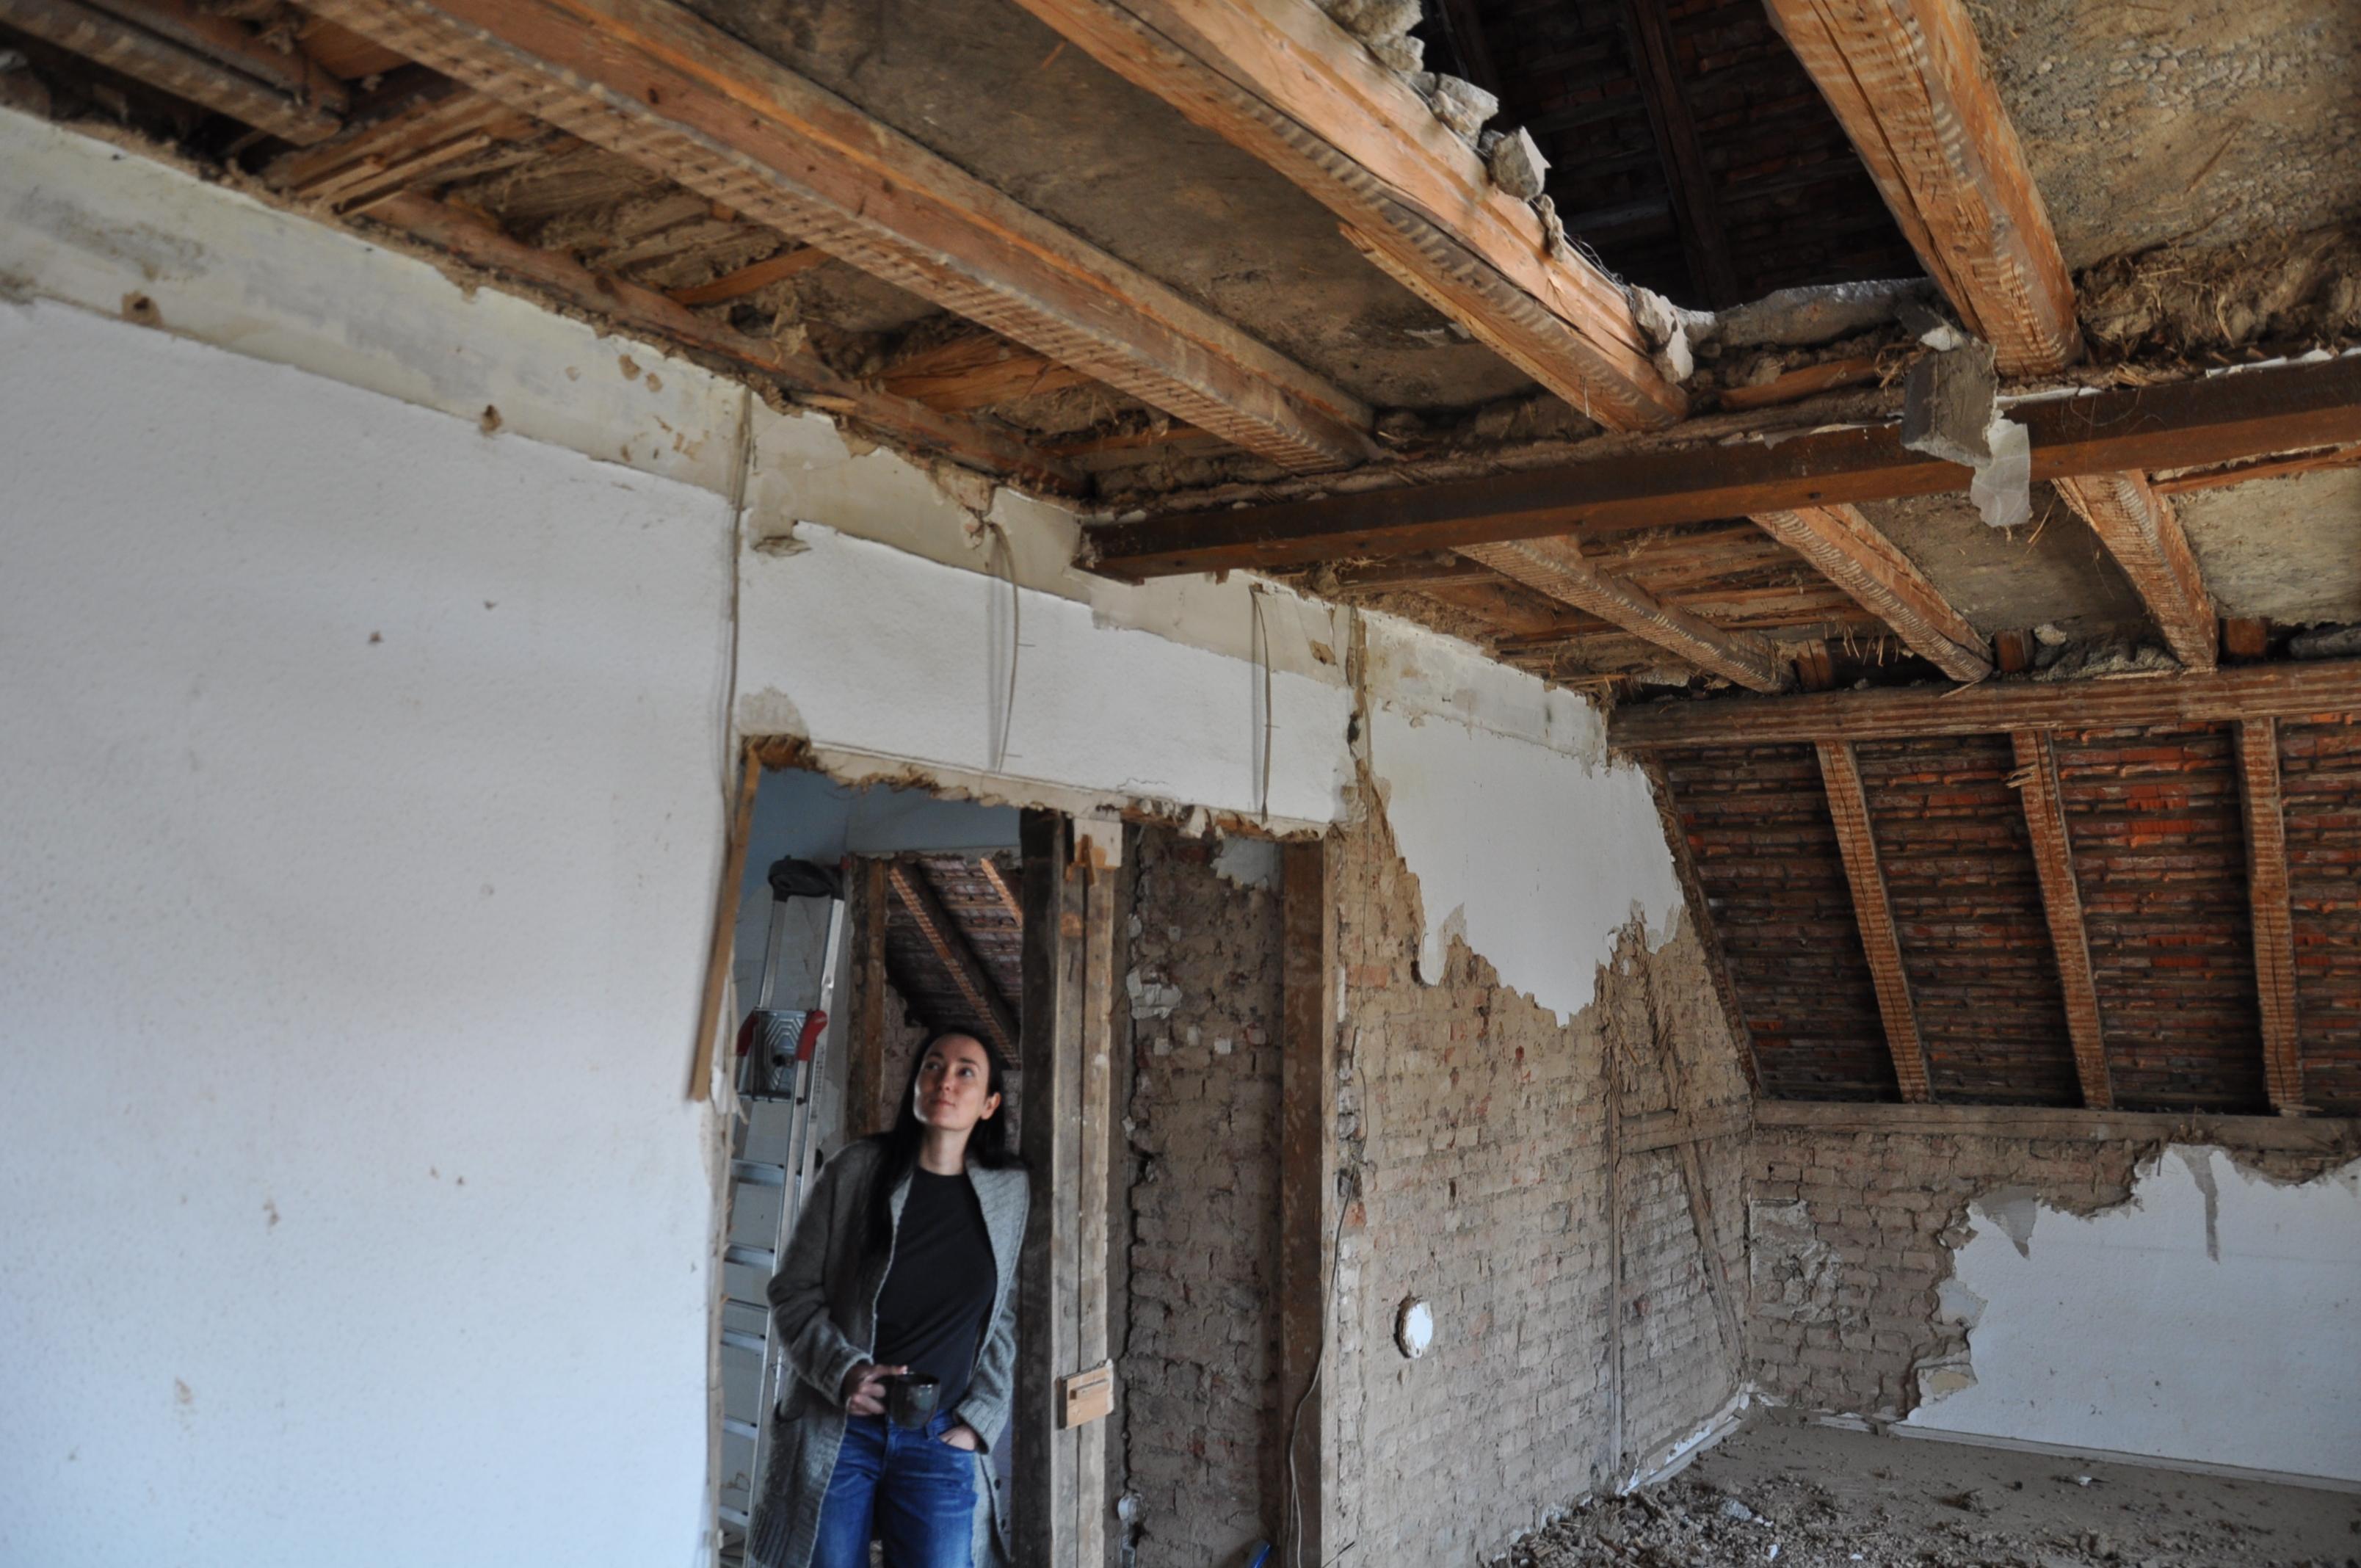 Während des Umbaus #dachausbau #kamin #wohnzimmer #loft #galerie ©Tatjana Adelt